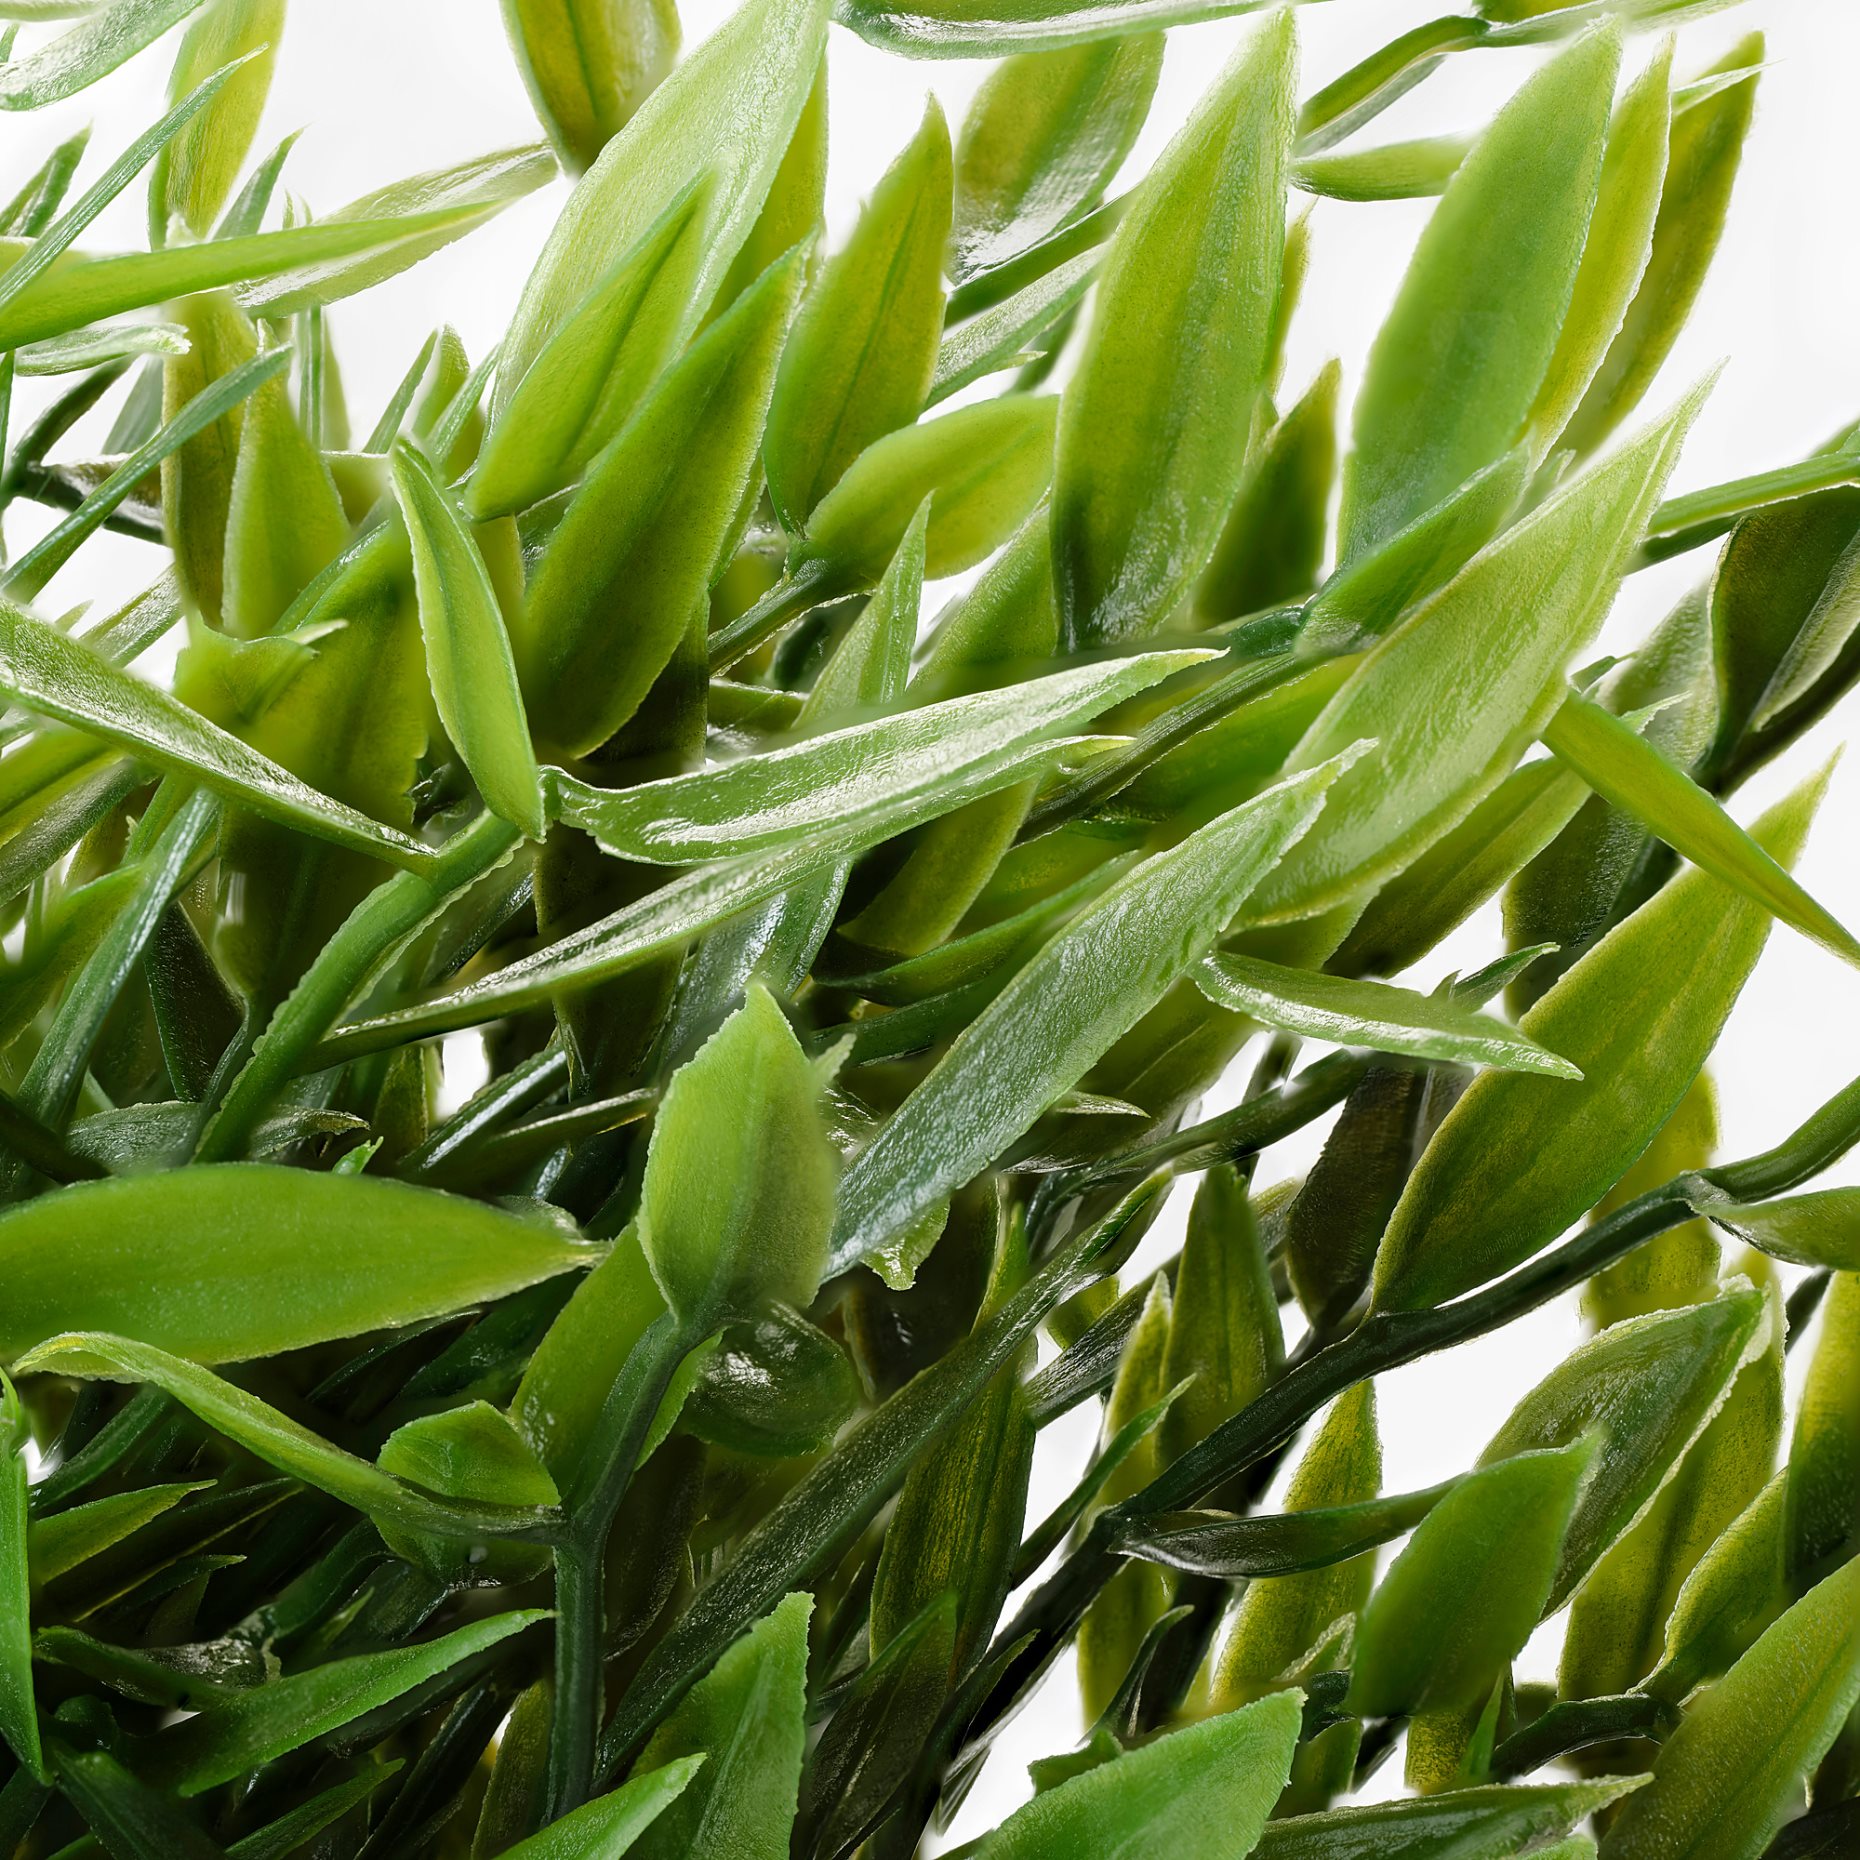 FEJKA, изкуствено саксийно растение, за употреба на закрито/открито Бамбук, 604.339.39